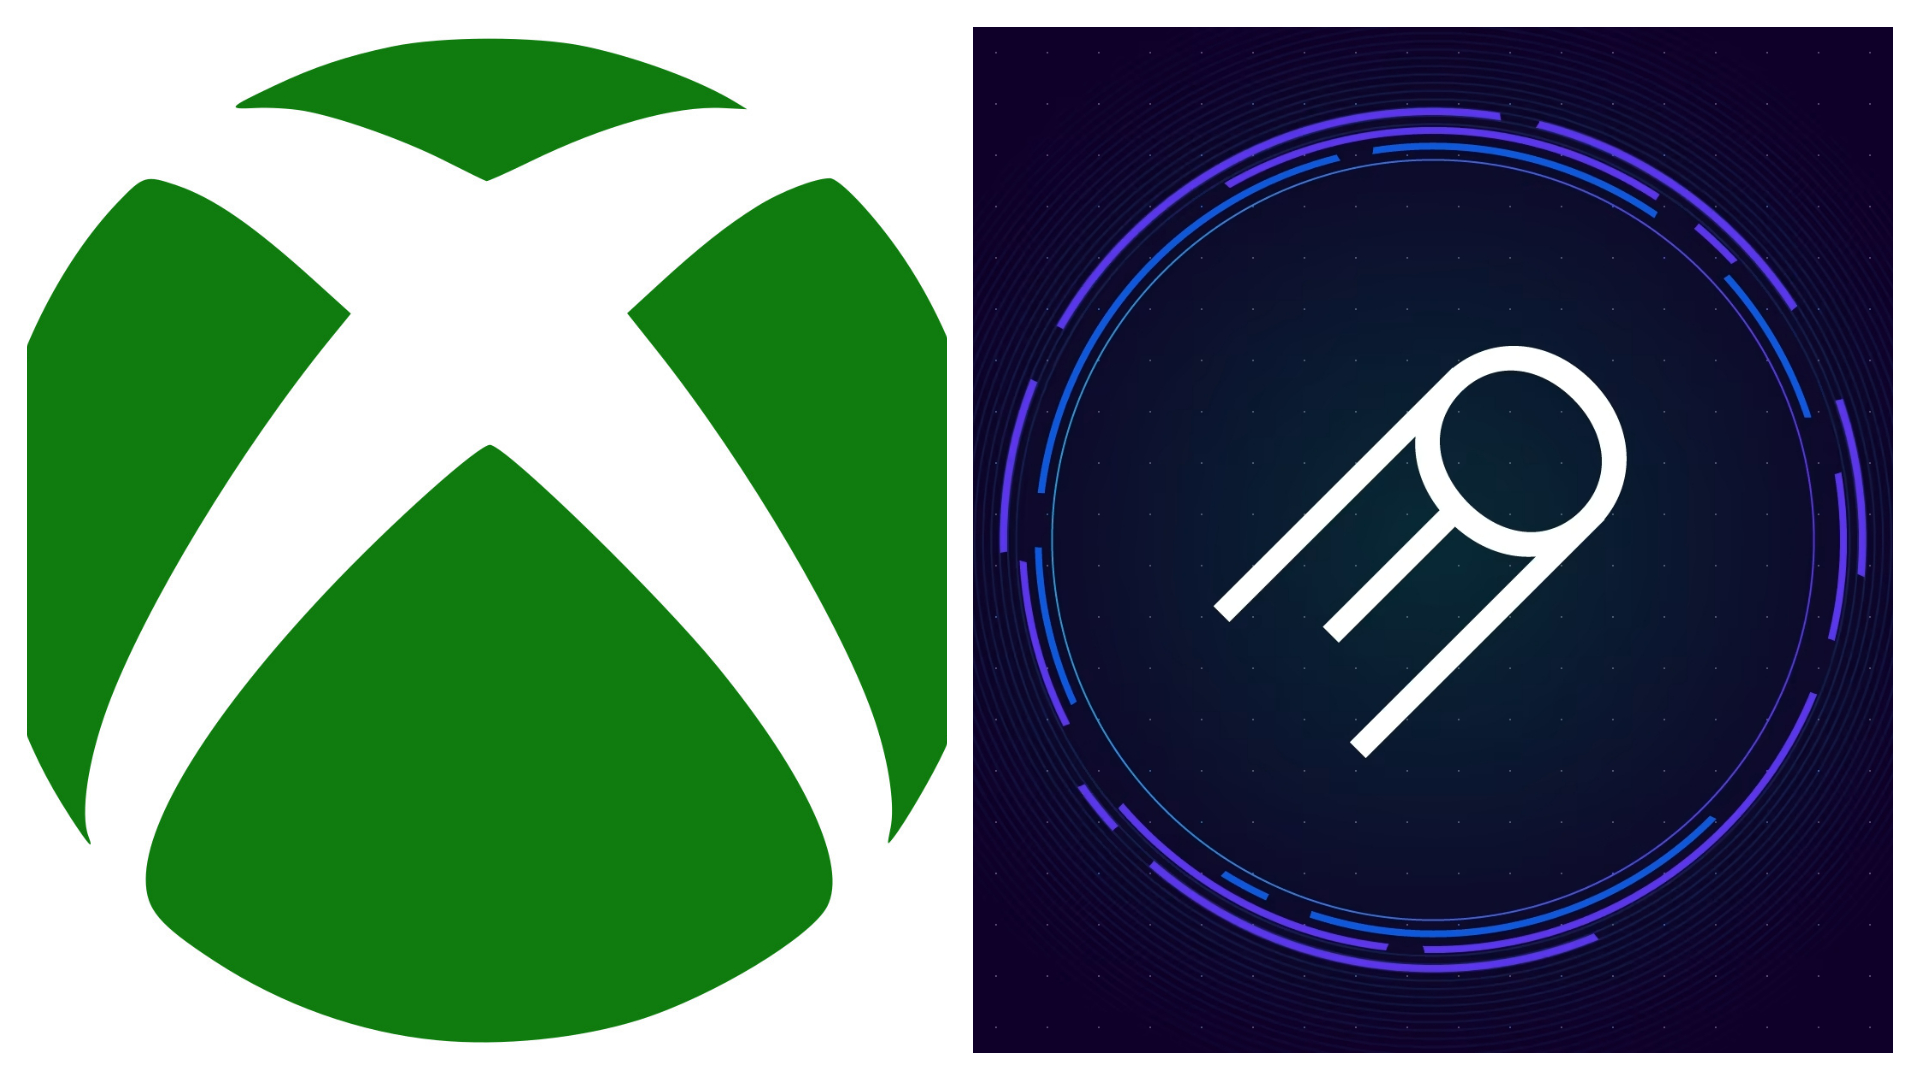 Montagem coloca lado a lado os logotipos do Xbox da Microsoft e do Boosteroid